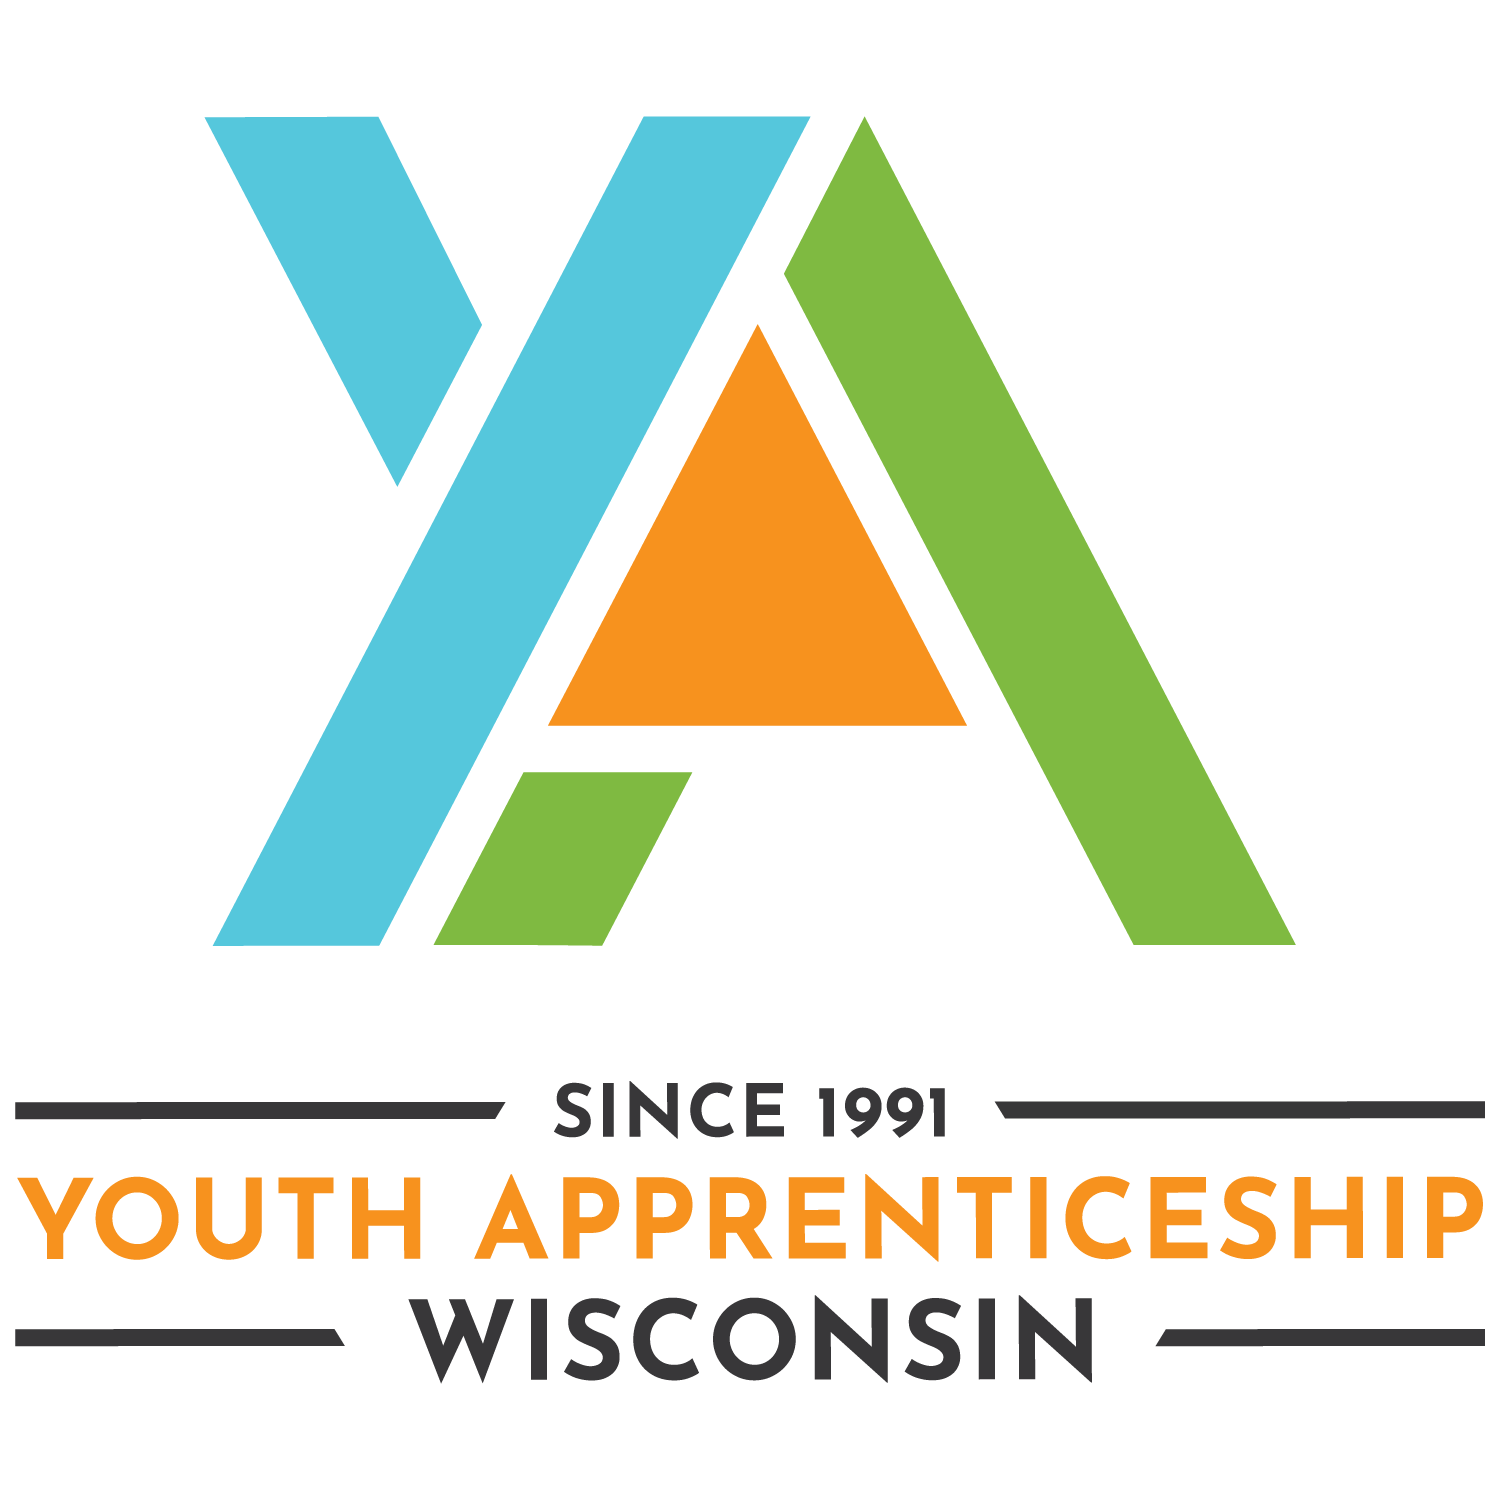 Youth Apprenticeship Program logo